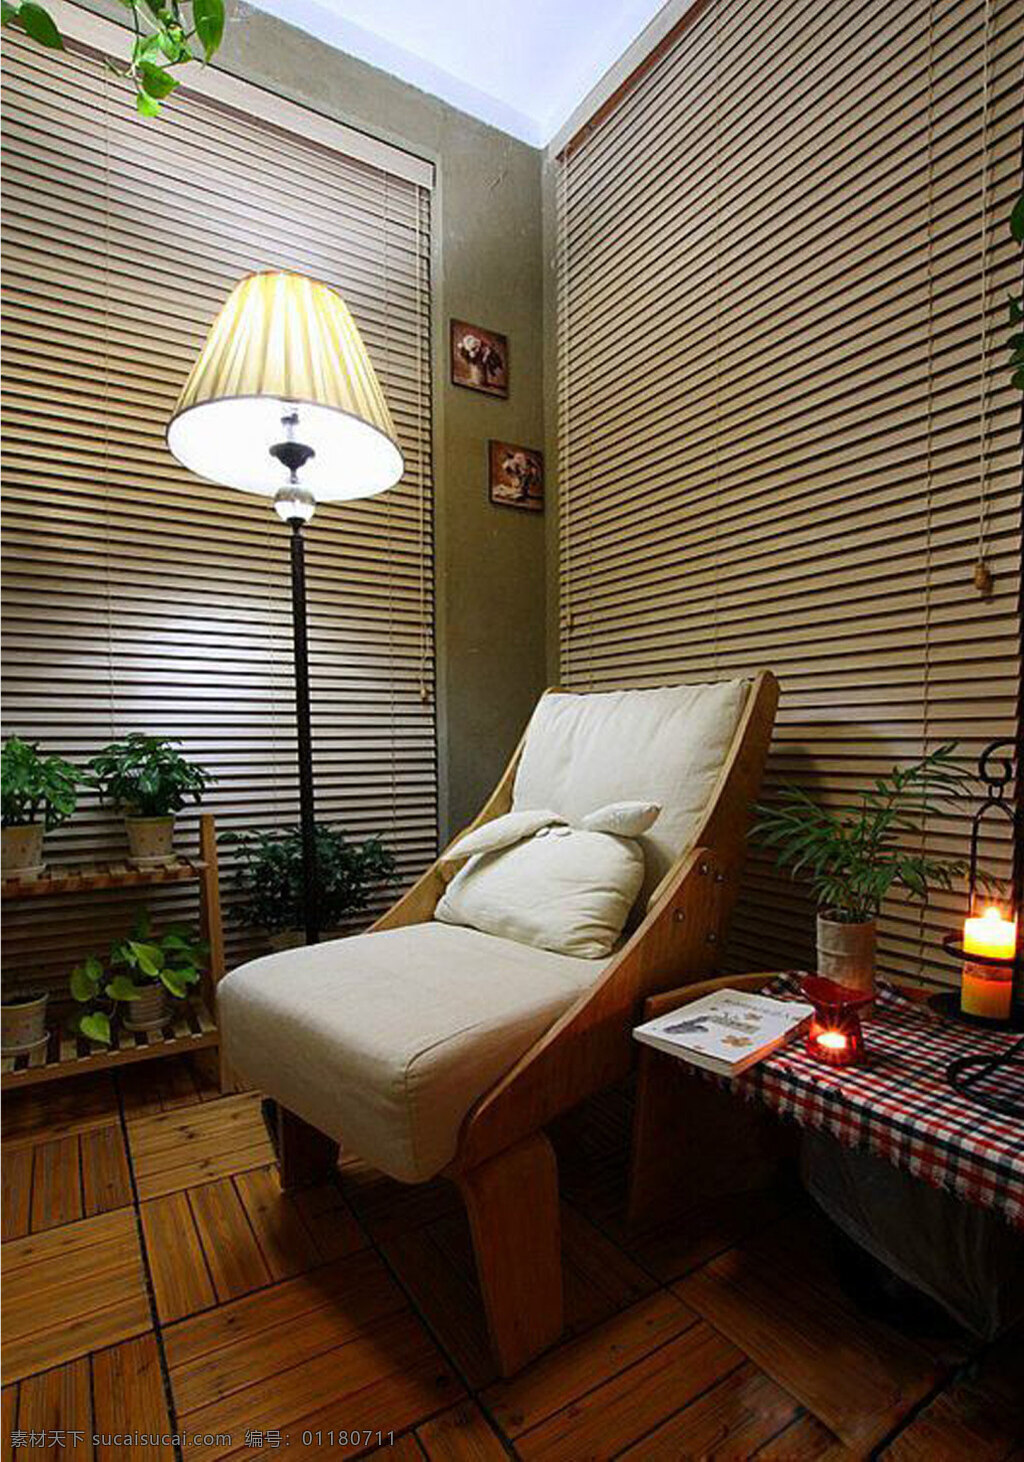 素雅 现代 卧室 装修 效果图 欧式风格 卧室效果图 卧室模型 效果图图片 jpg图片 躺椅 落地灯